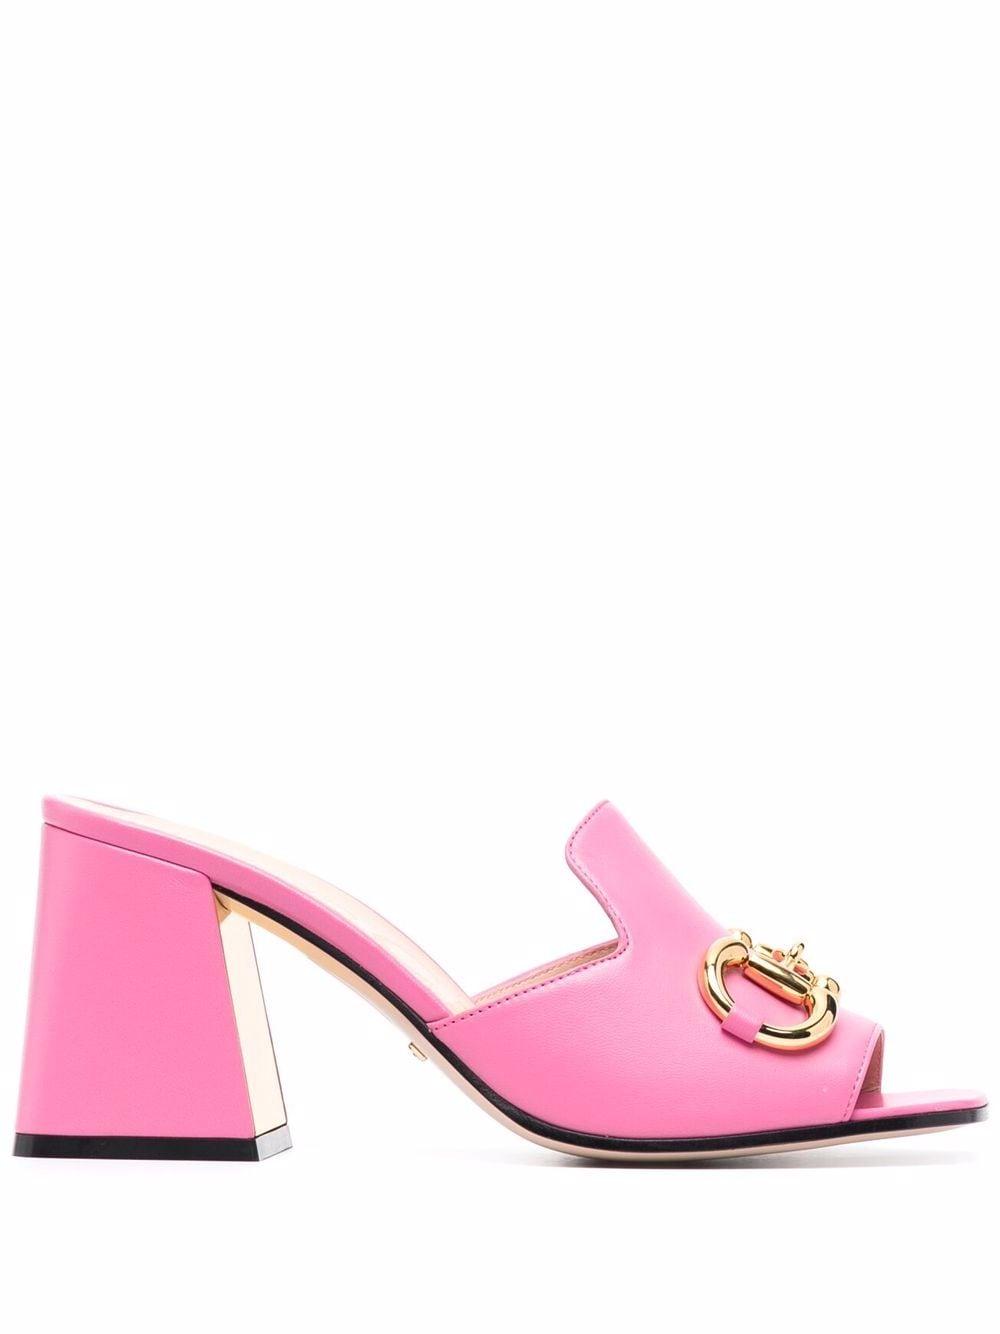 Gucci Horsebit 75mm Mule Sandals in Pink | Lyst